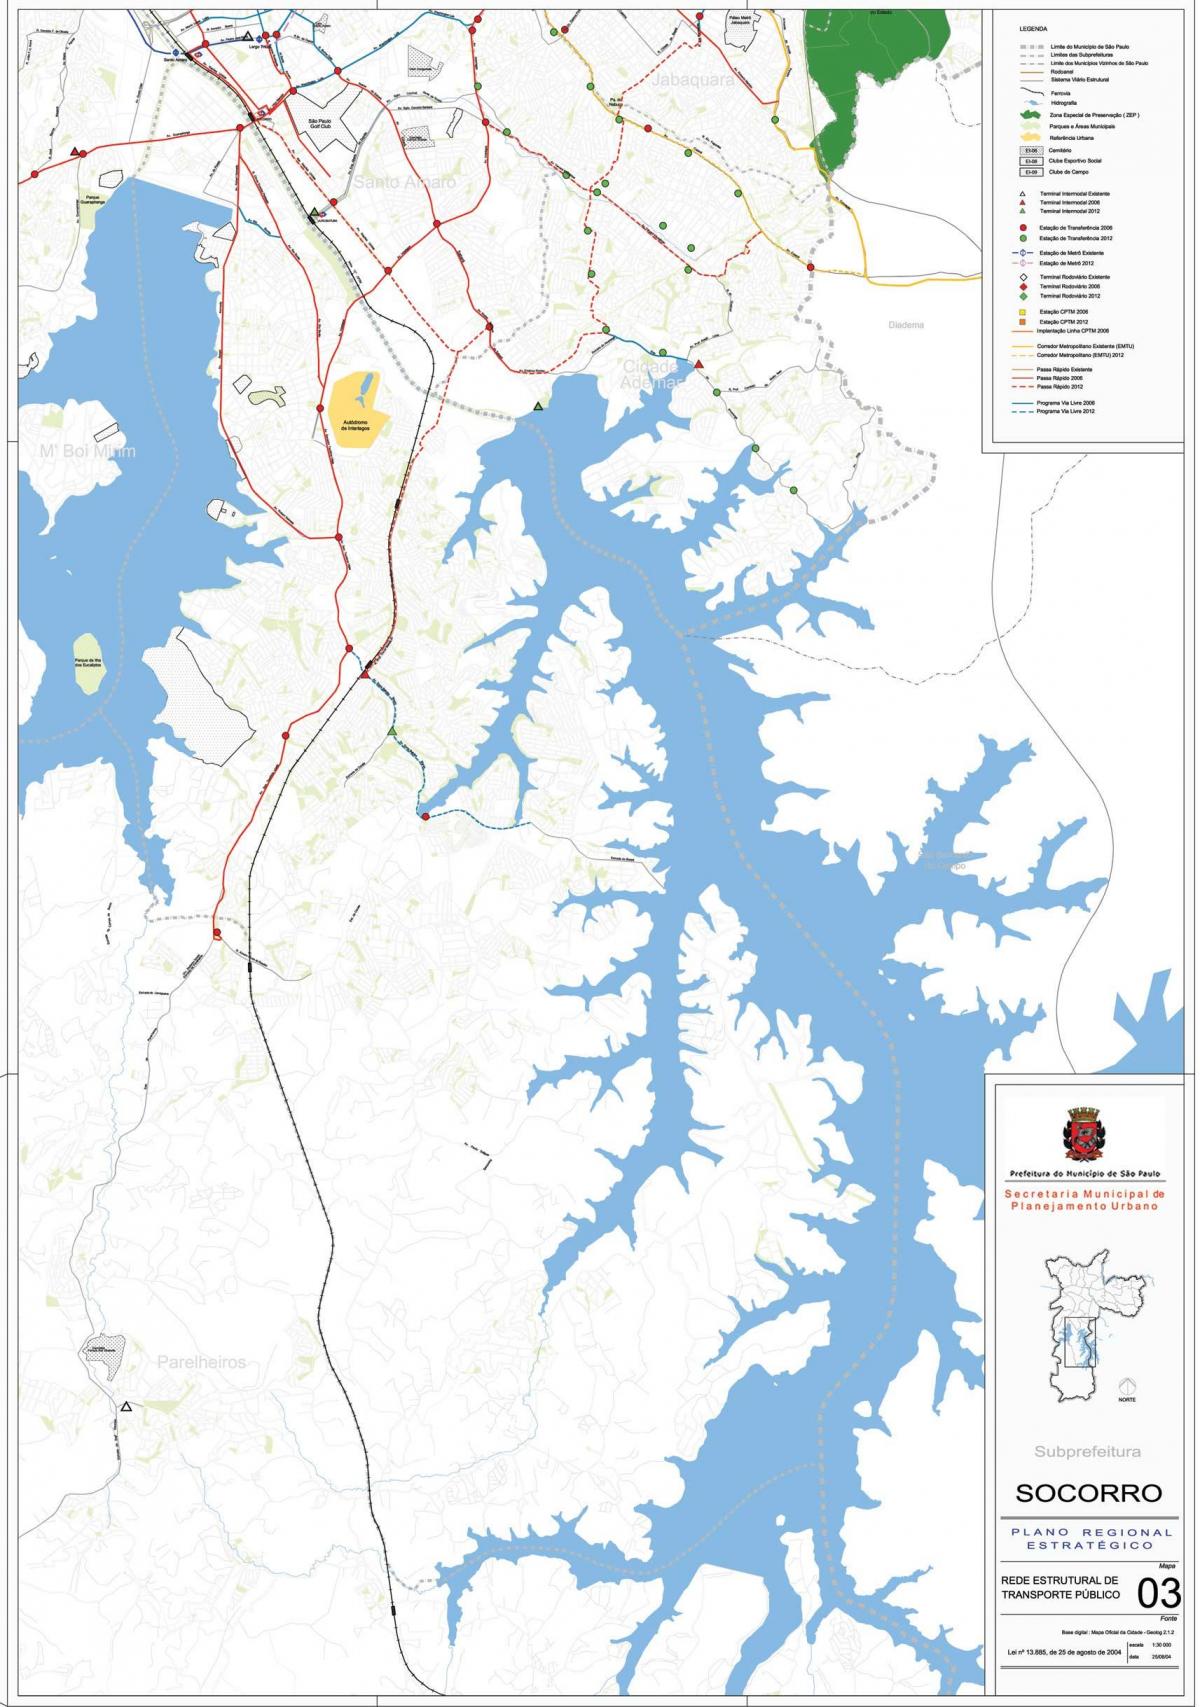 Carte Capela do Socorro São Paulo - Transports publics